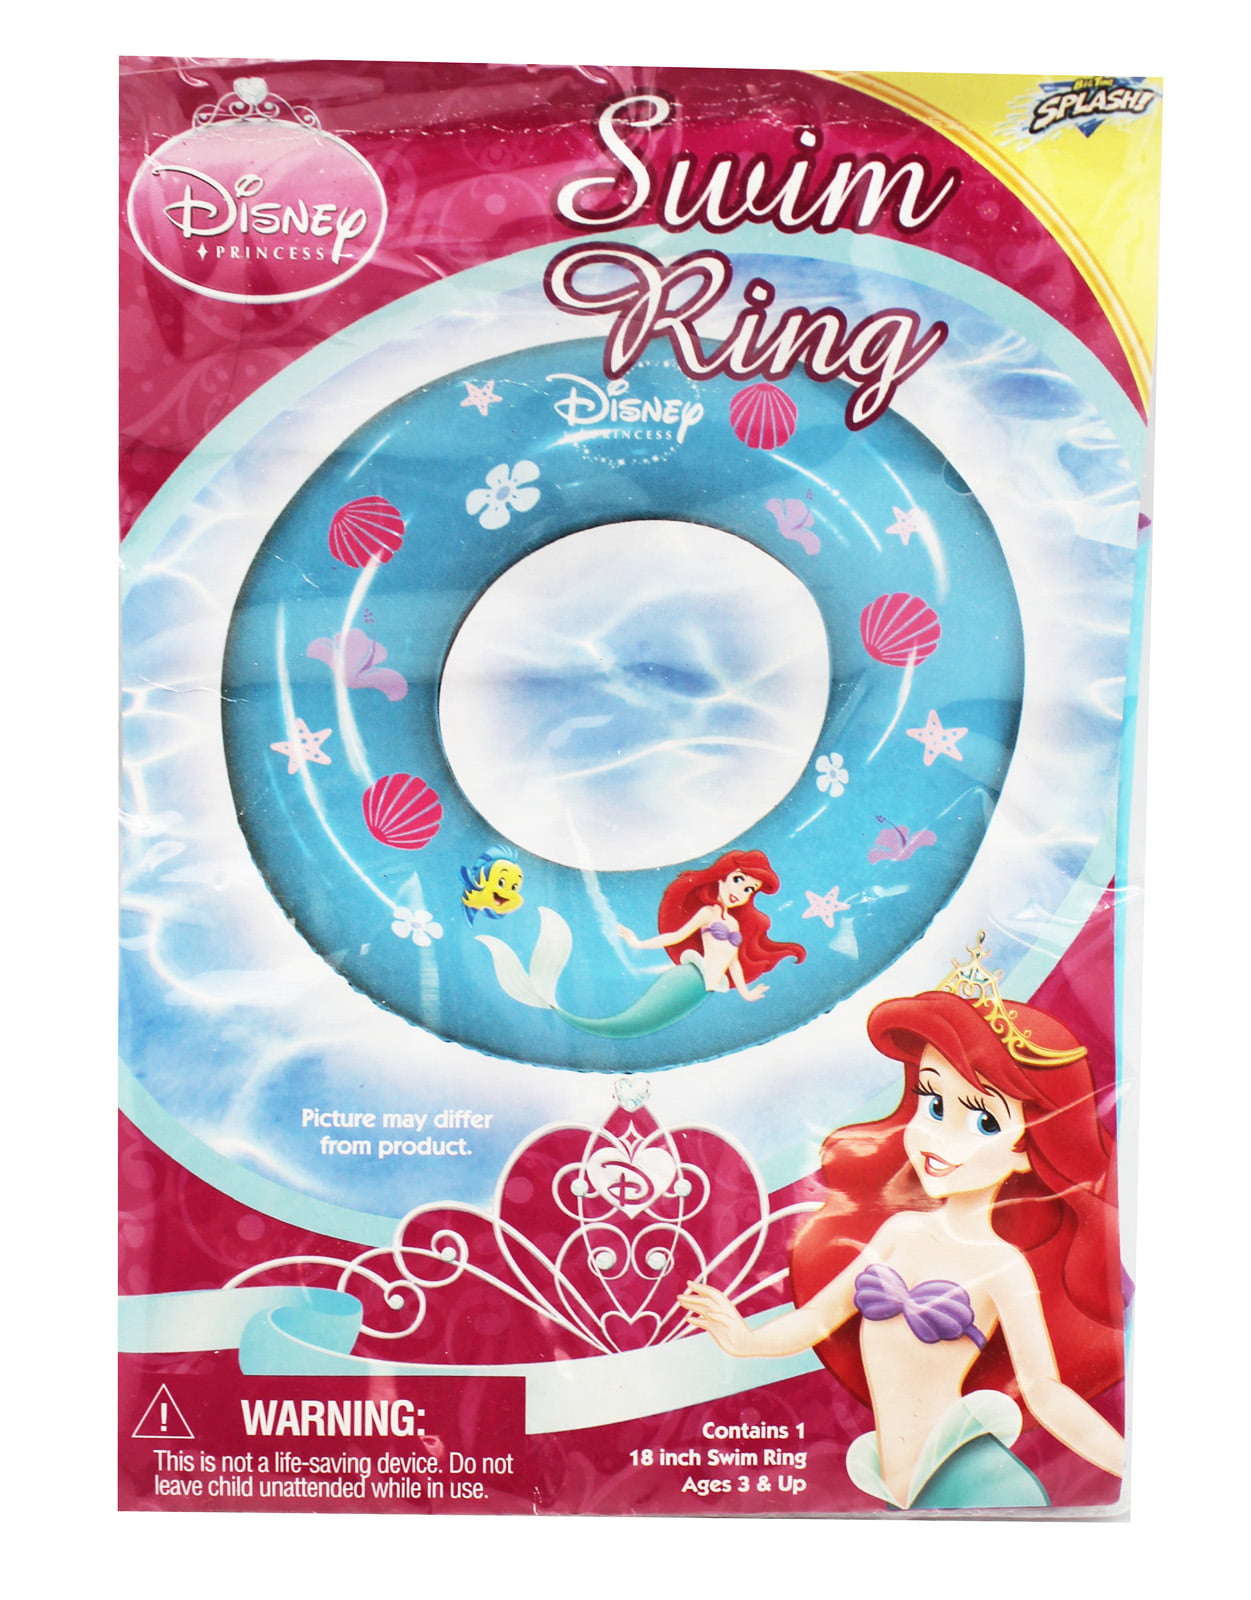 Brand New Disney Princess Inflatable Swim Pool Ring 17.5" w/ Repair Kit 